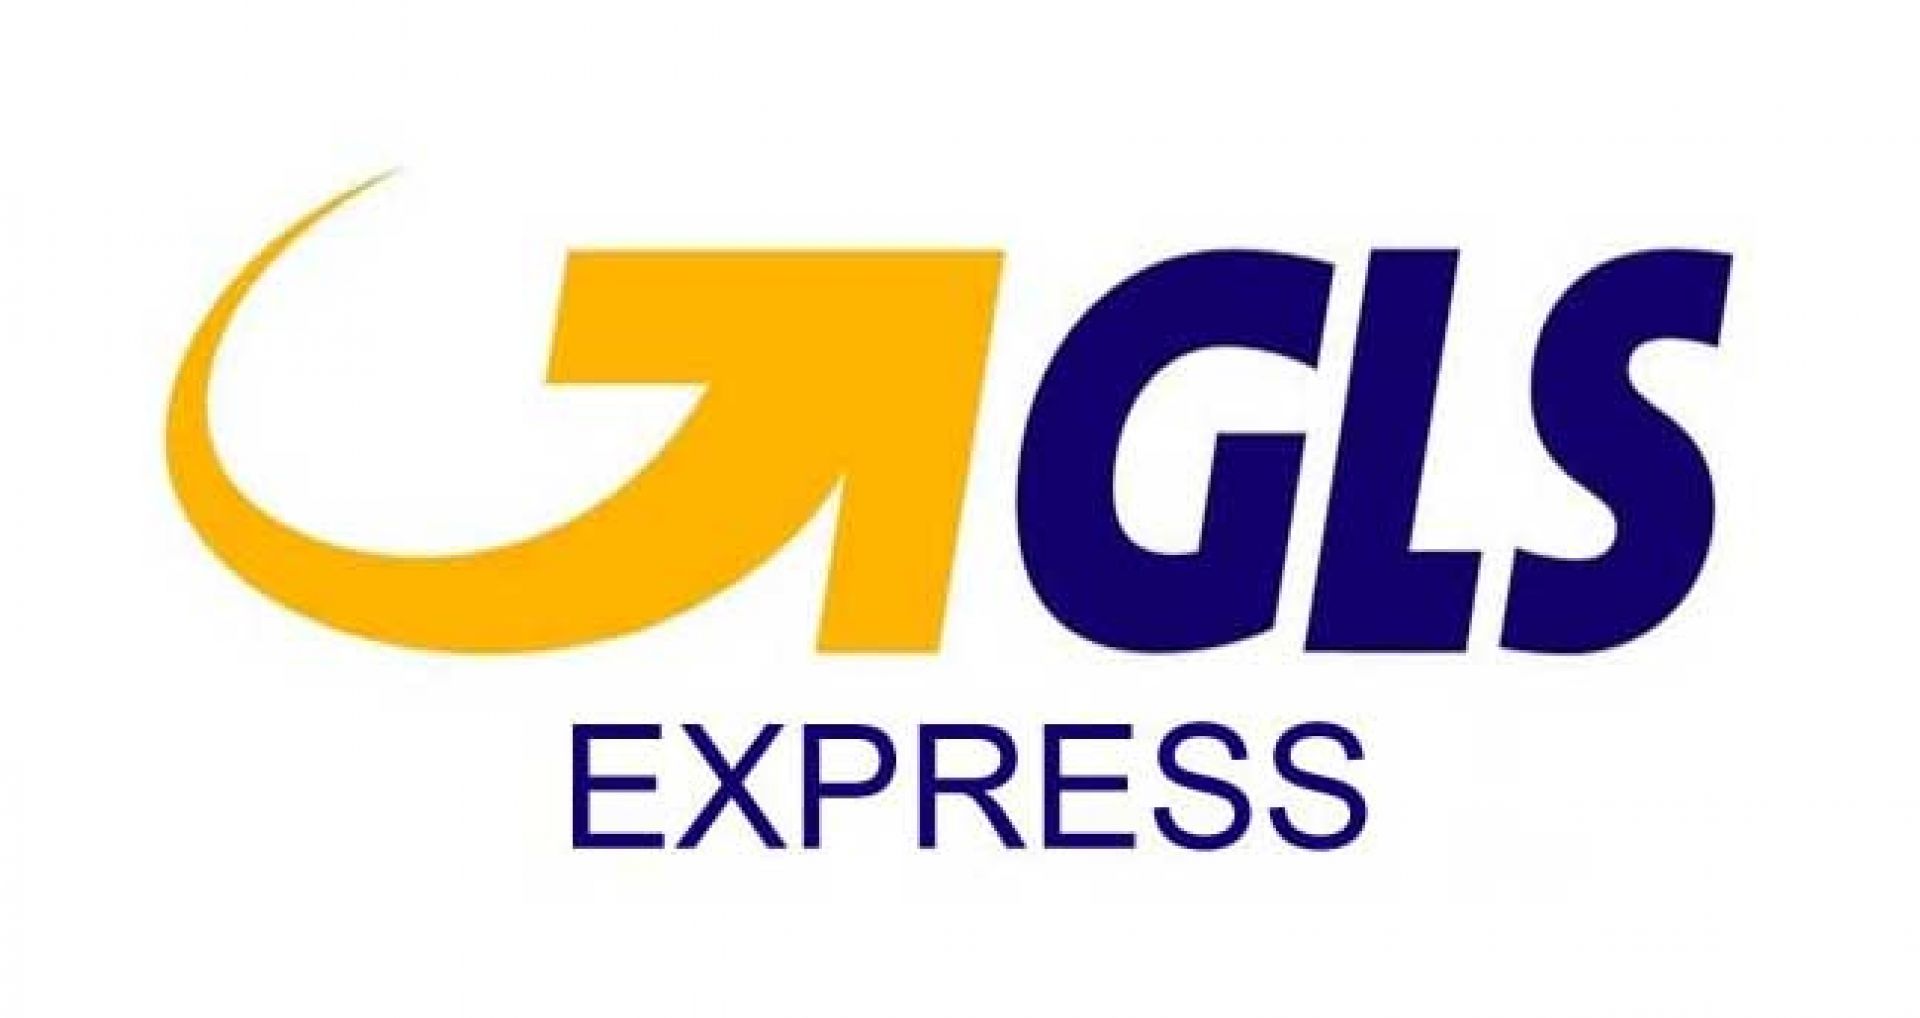 Express GLS